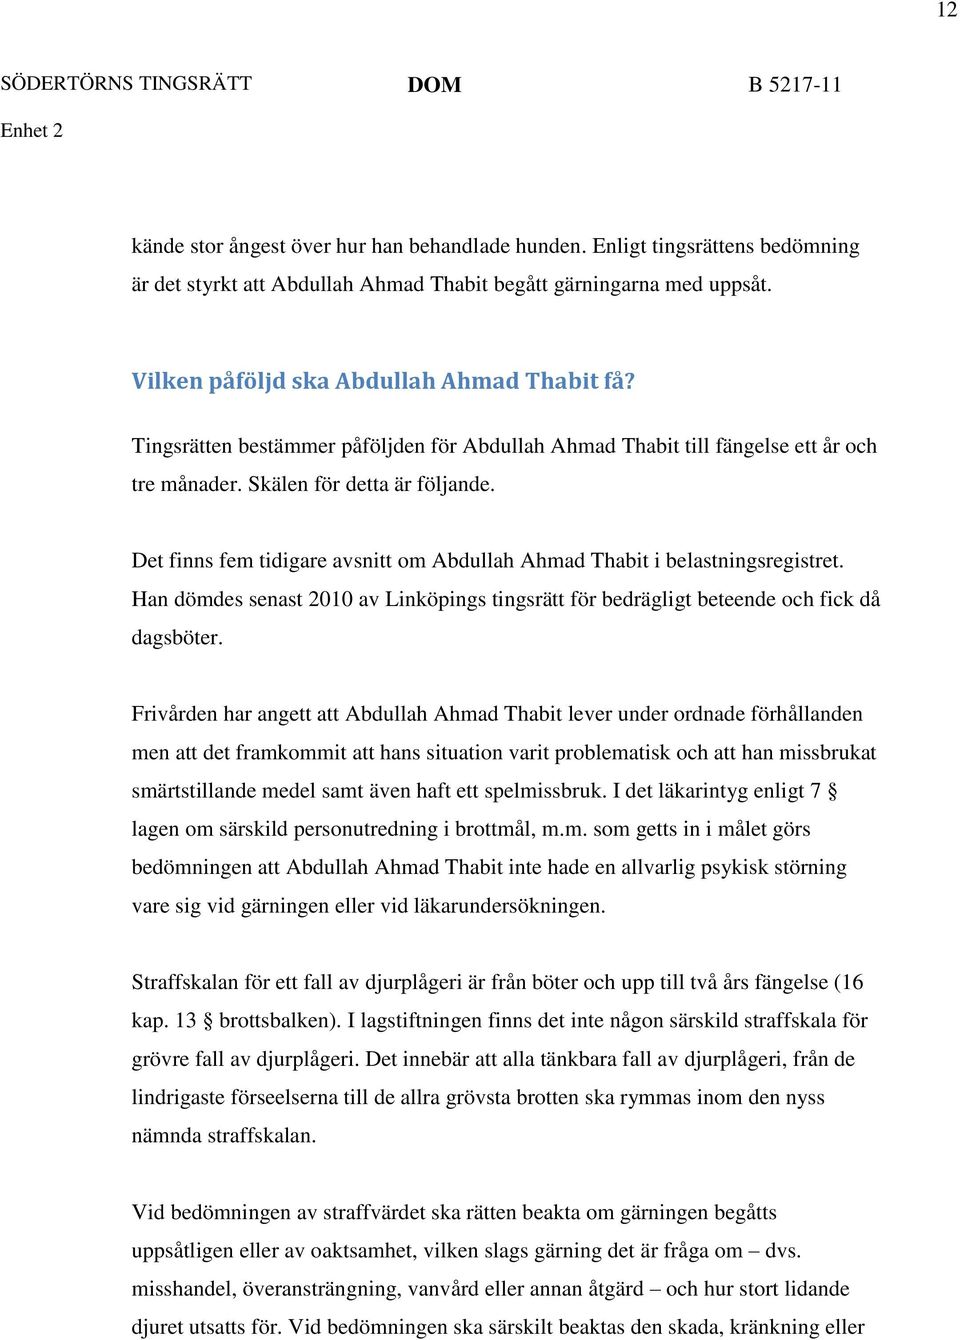 Det finns fem tidigare avsnitt om Abdullah Ahmad Thabit i belastningsregistret. Han dömdes senast 2010 av Linköpings tingsrätt för bedrägligt beteende och fick då dagsböter.